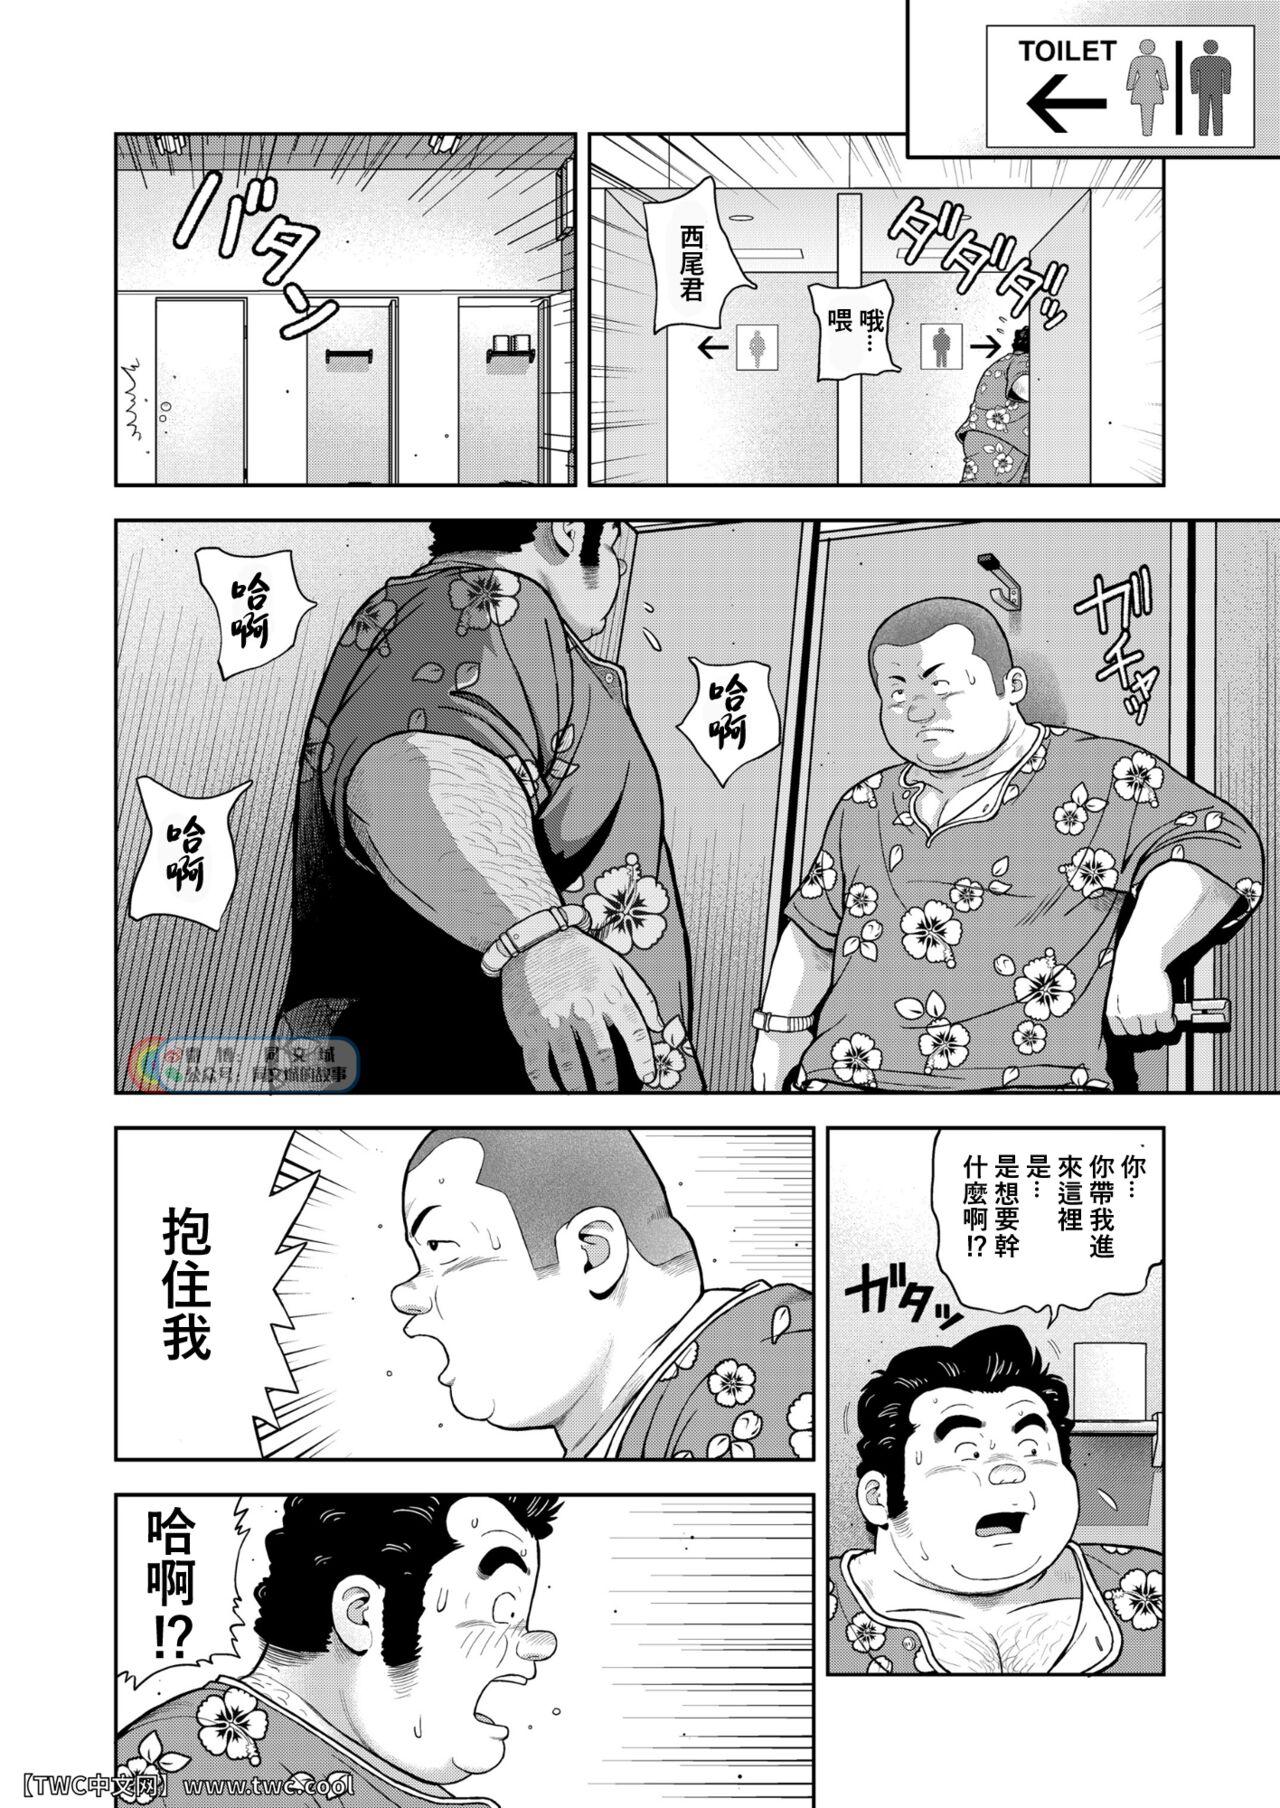 Sixtynine Kunoyu Nijyunanahatsume Anokane o Narasunohadonata - Original Peluda - Page 8